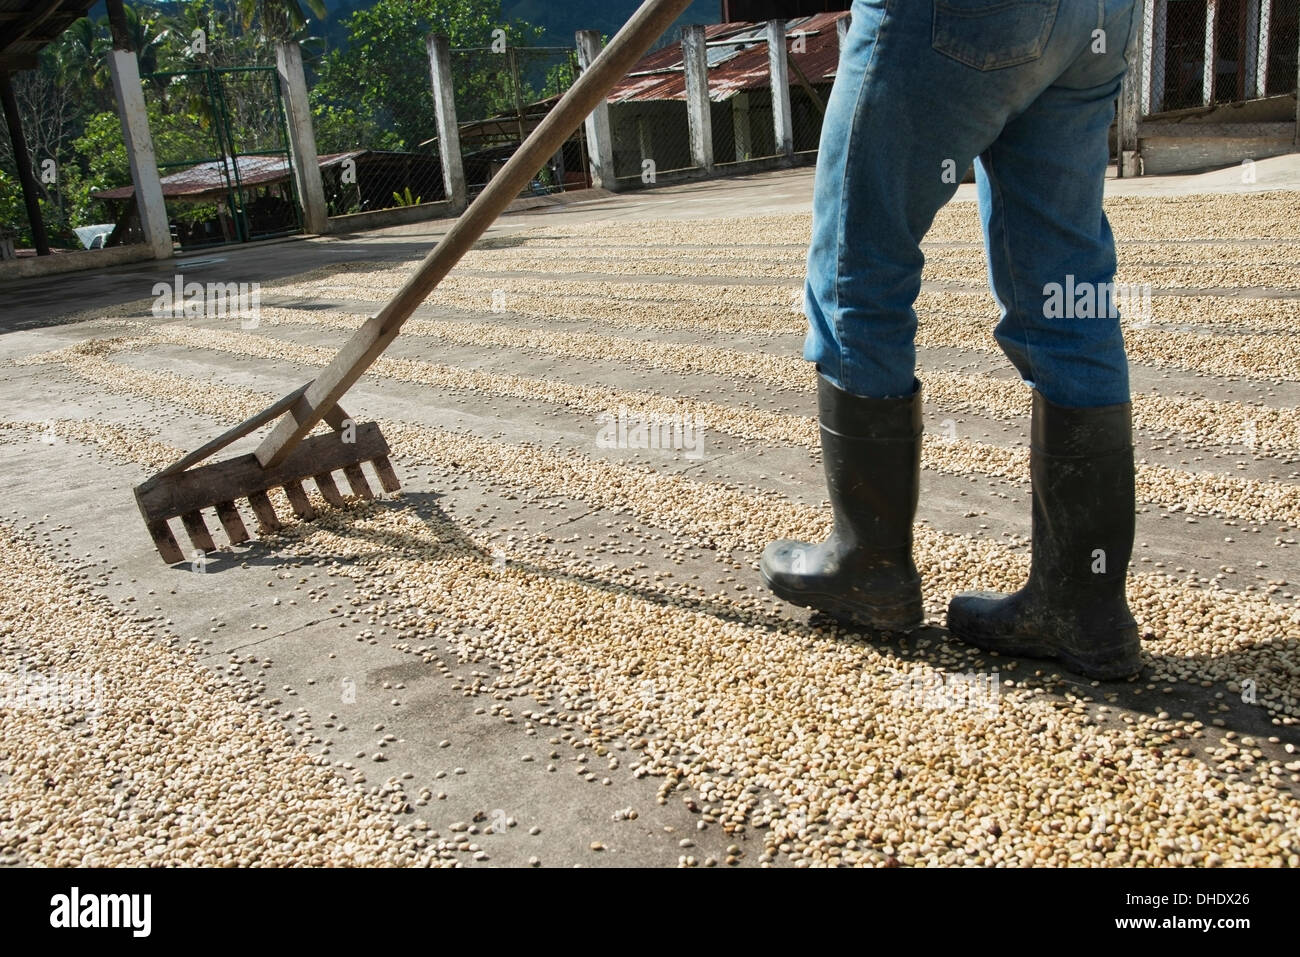 Worker Raking Coffee Beans At A Coffee Plantation; Zacapa, Guatemala Stock Photo